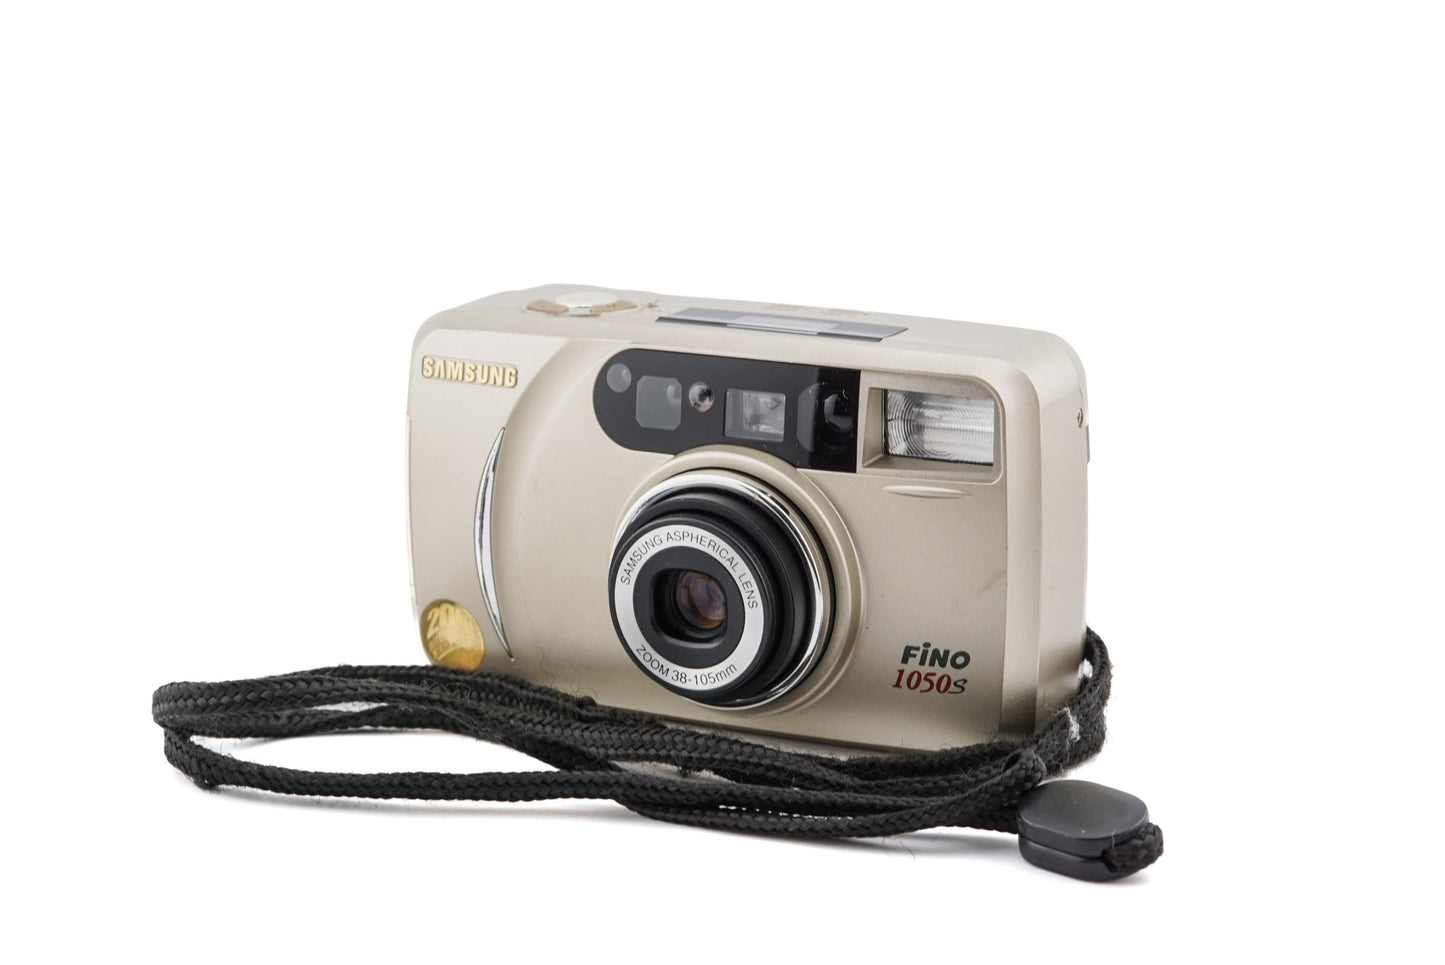 Samsung Fino 1050S - Camera